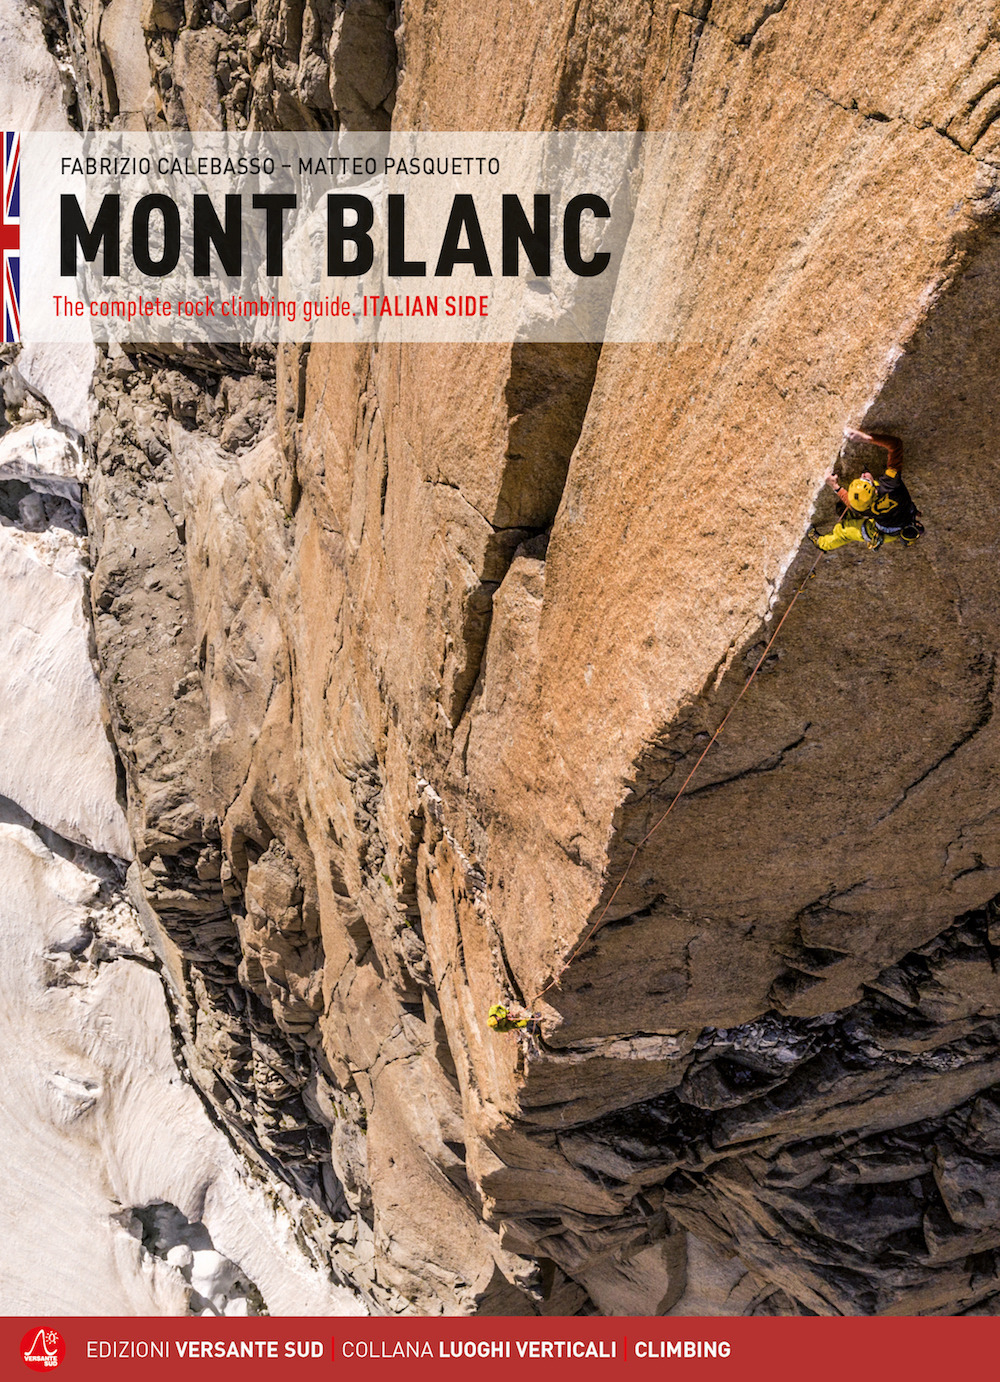 Libri Calebasso Fabrizio / Matteo Pasquetto - Mont Blanc. The Complete Rock Climbing Guide. Italian Side NUOVO SIGILLATO, EDIZIONE DEL 08/07/2020 SUBITO DISPONIBILE